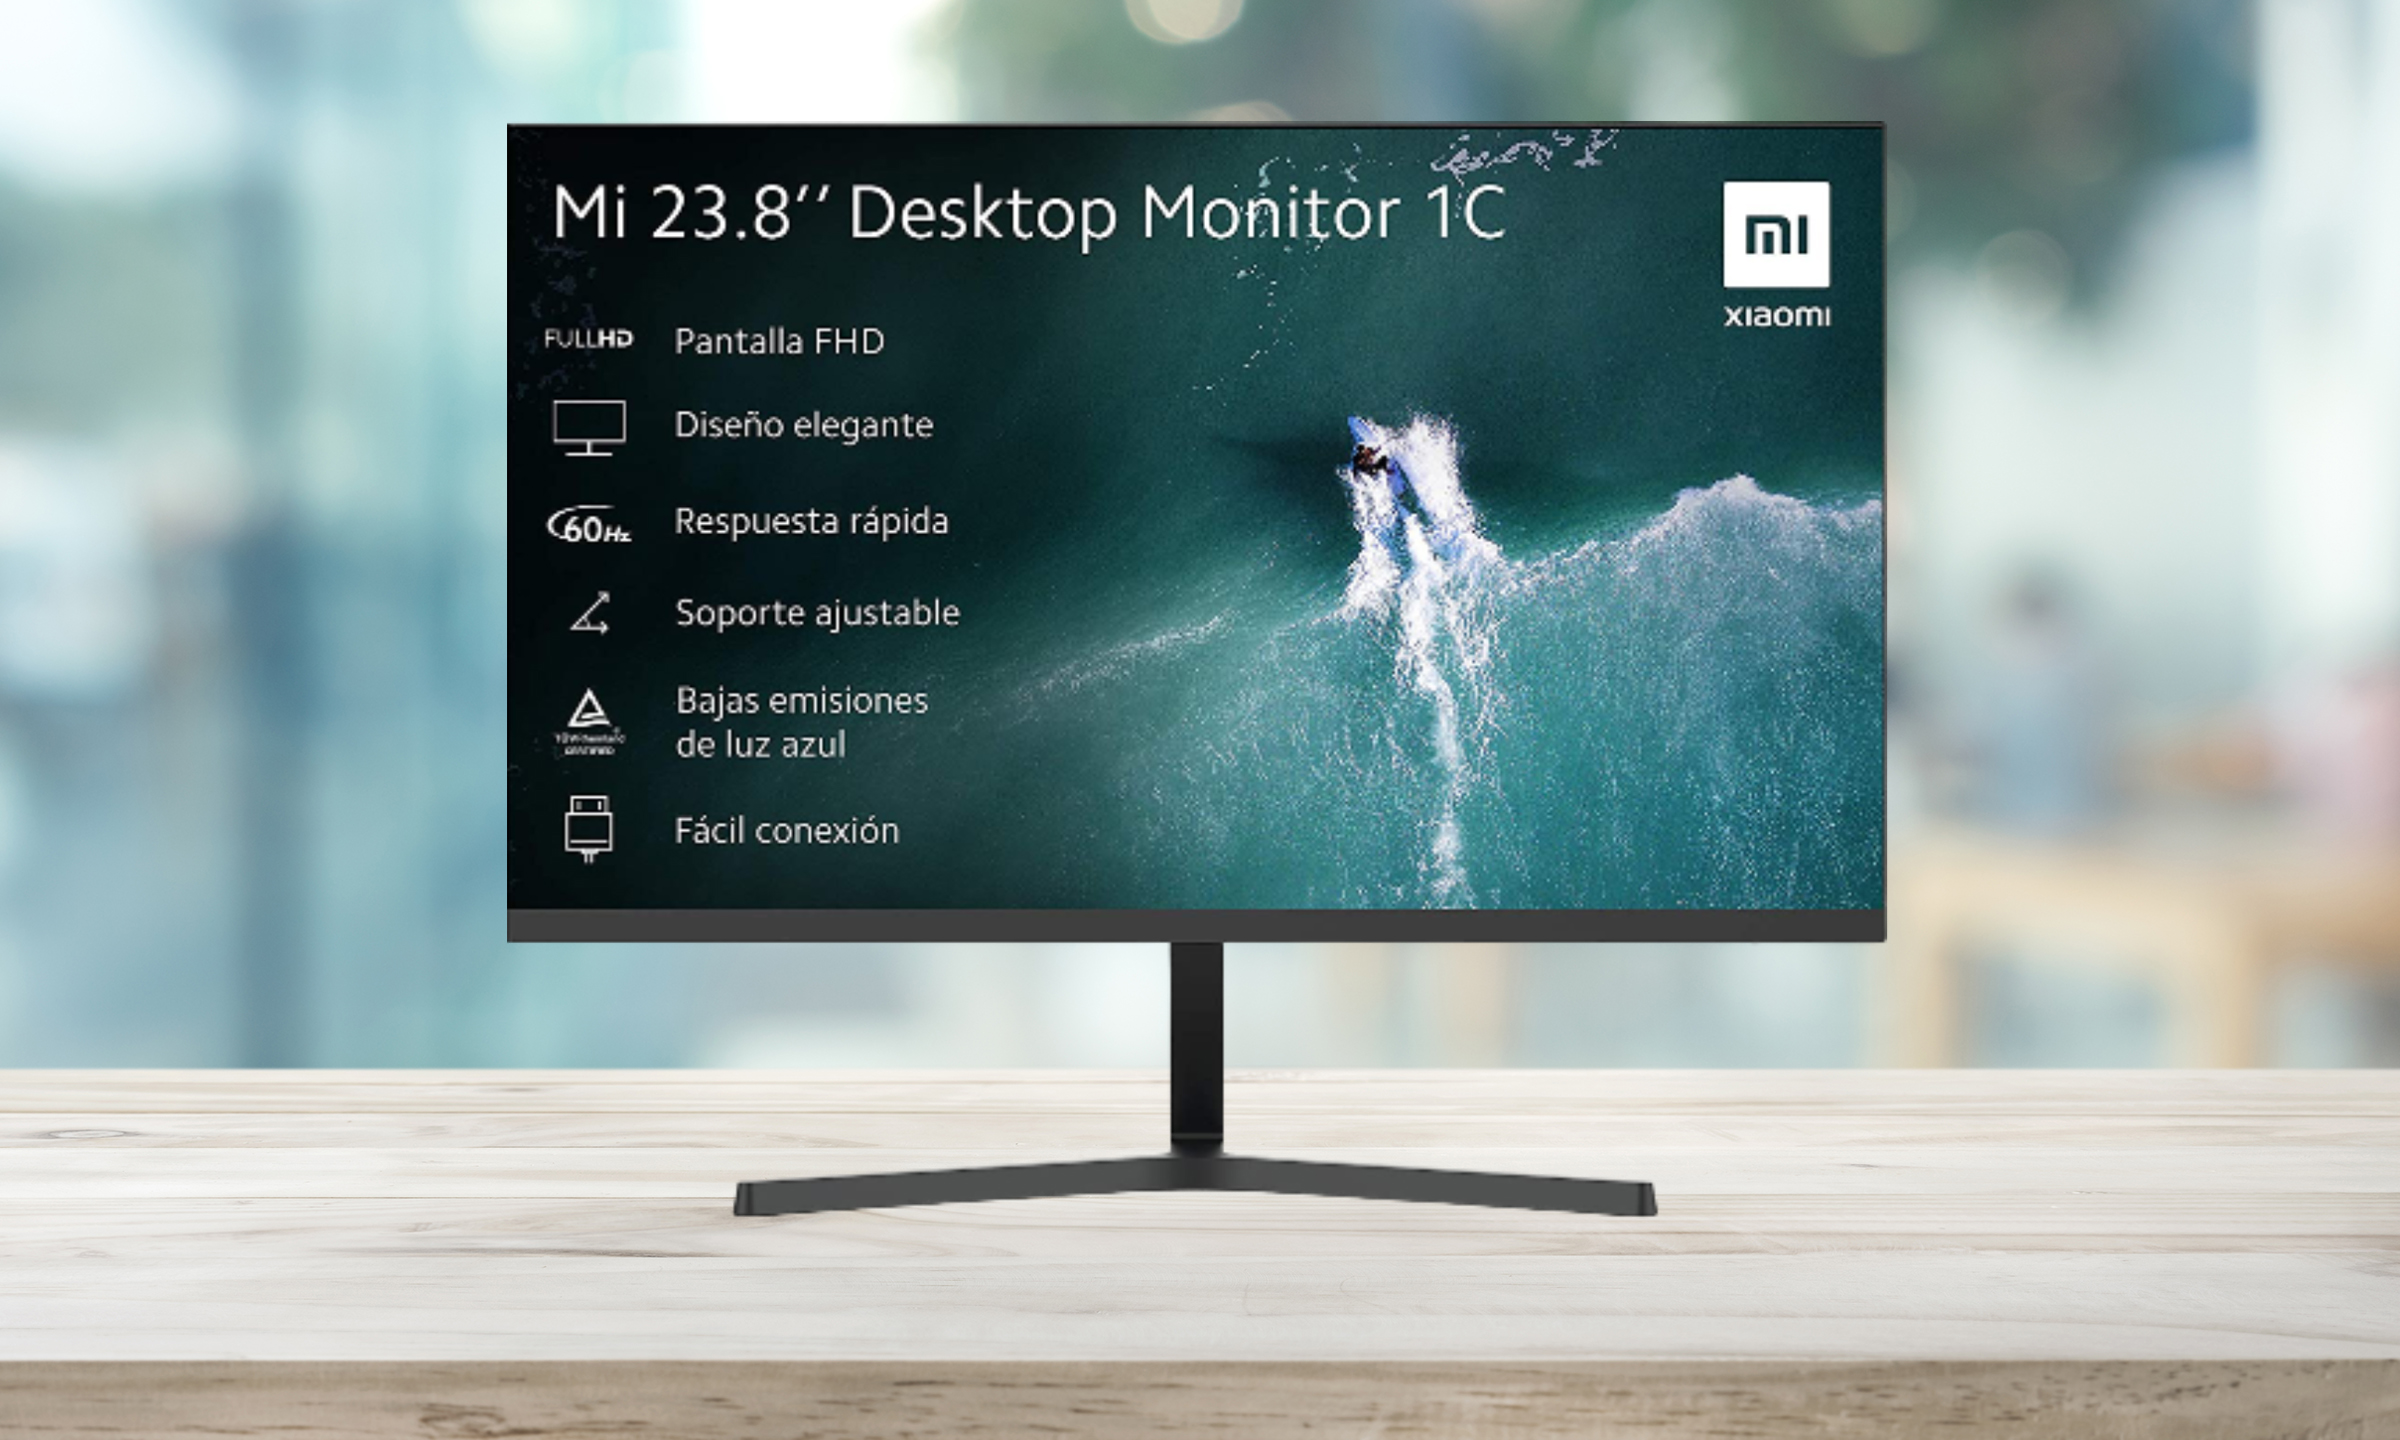 Xiaomi Mi Desktop Monitor 1c 23.8